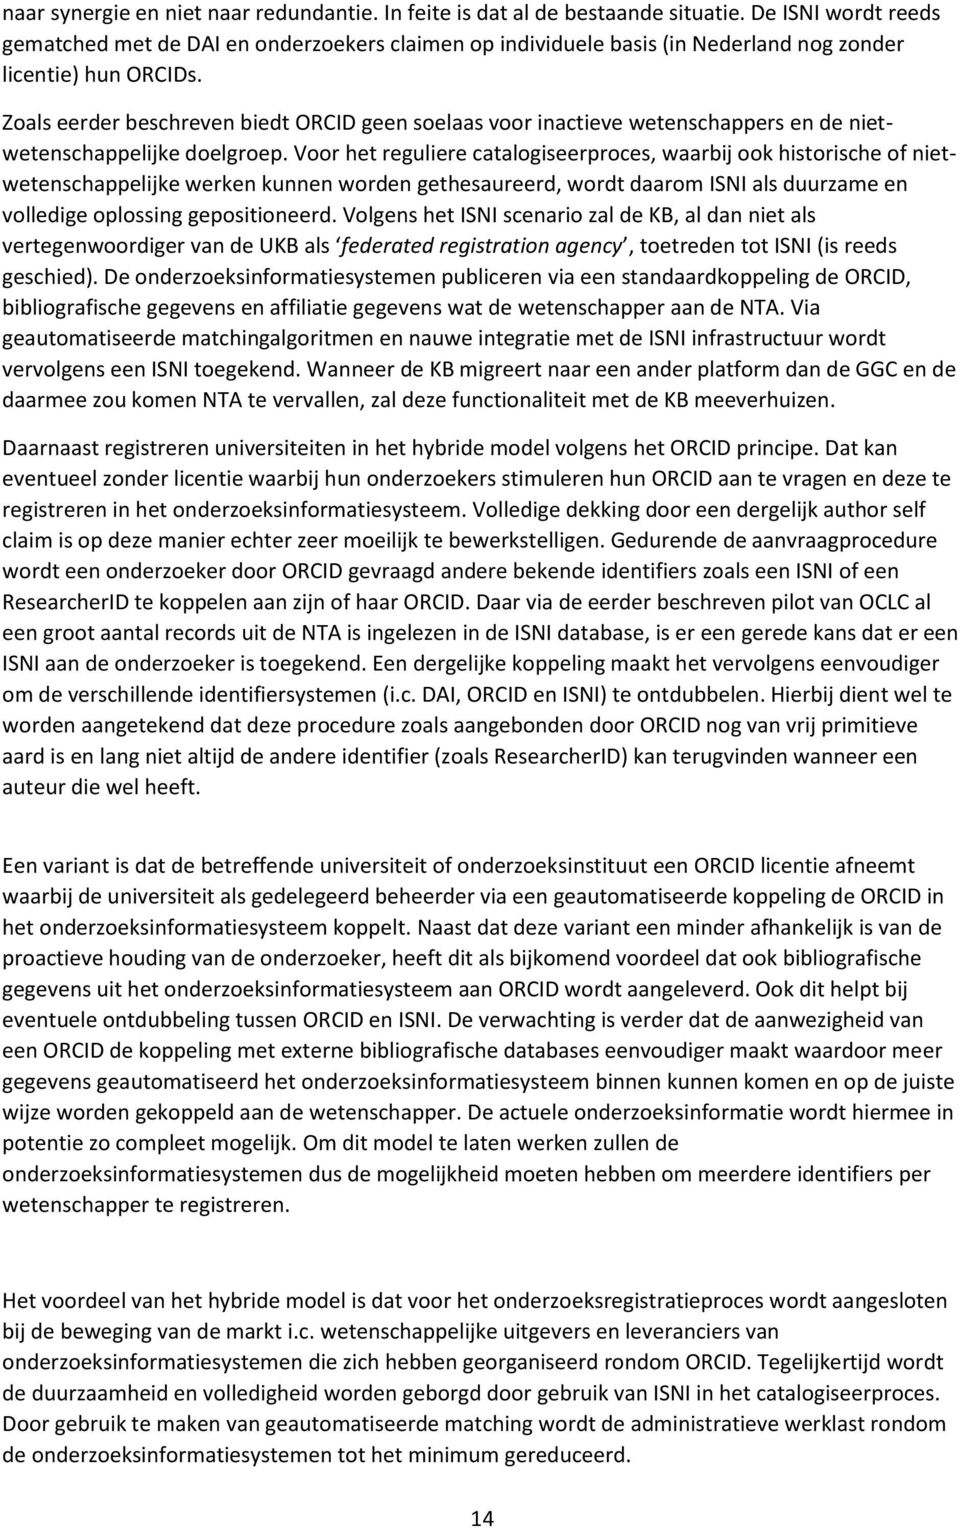 Zoals eerder beschreven biedt ORCID geen soelaas voor inactieve wetenschappers en de nietwetenschappelijke doelgroep.